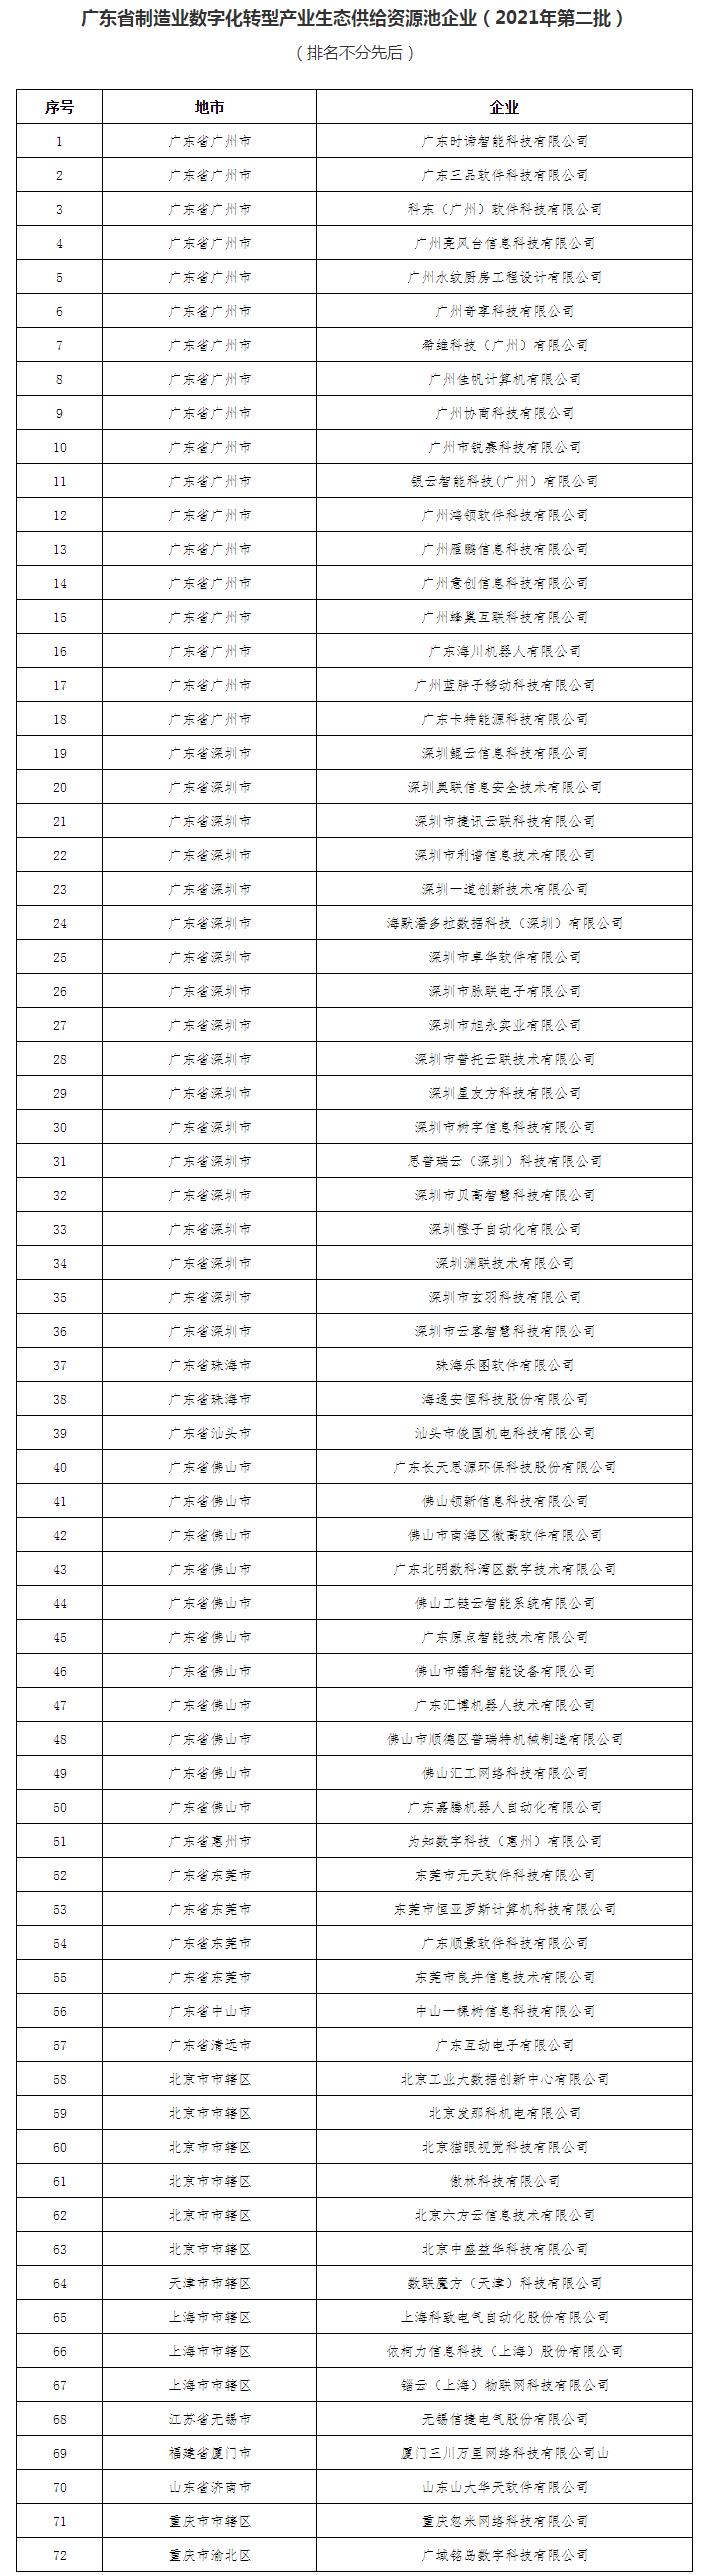 广东省工业互联网生产联盟名单